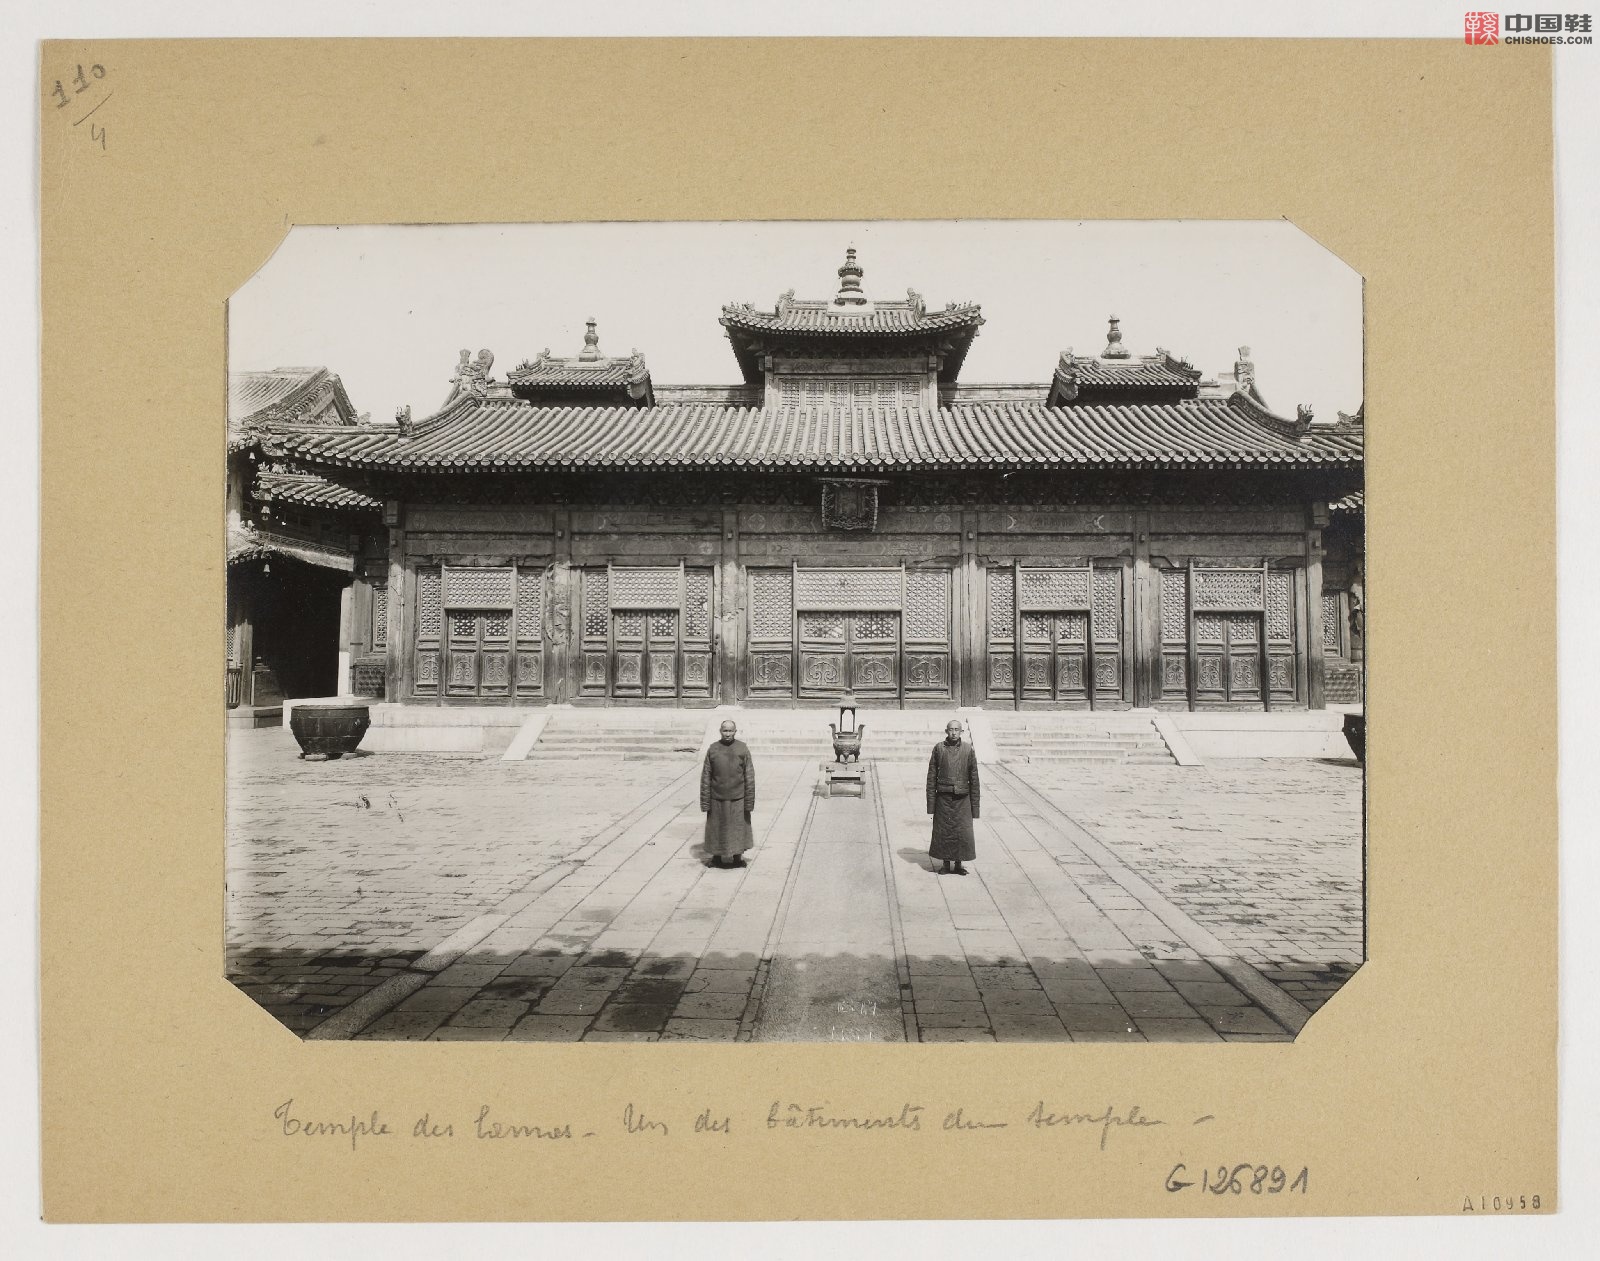 拉里贝的中国影像记录.415幅.By Firmin Laribe.1900-1910年_Page_325.jpg